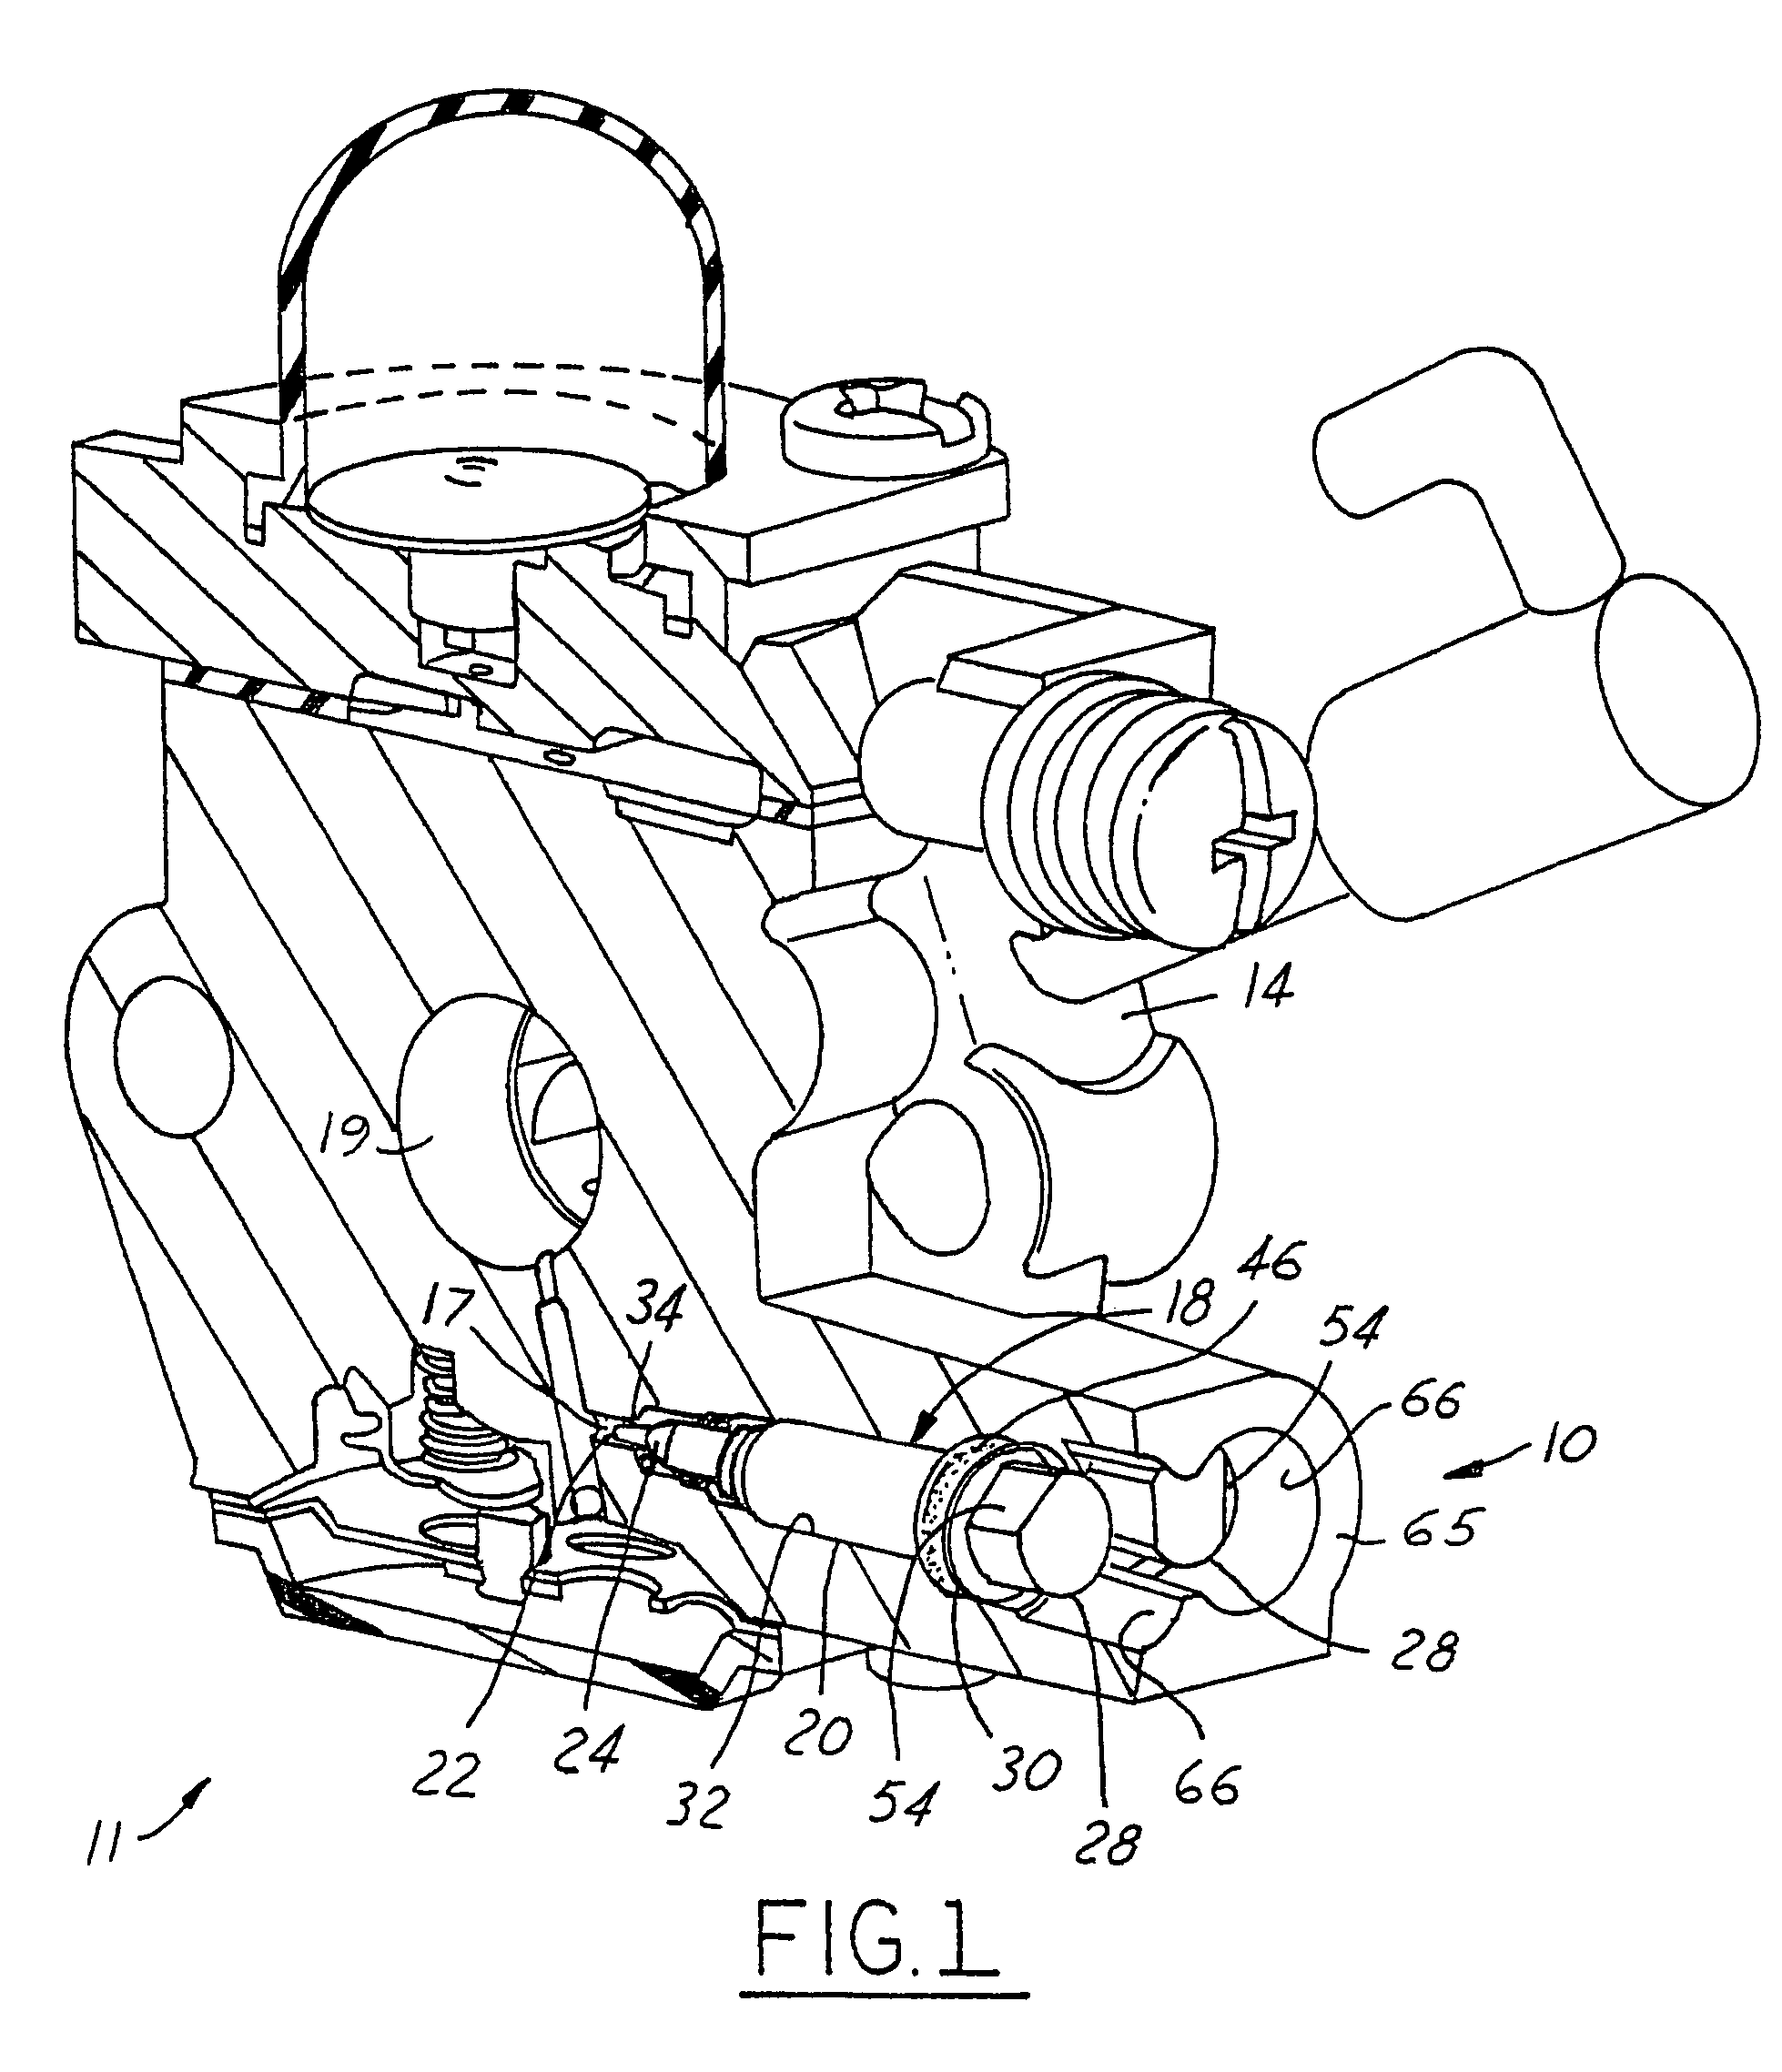 Carburetor air-fuel mixture adjustment assembly